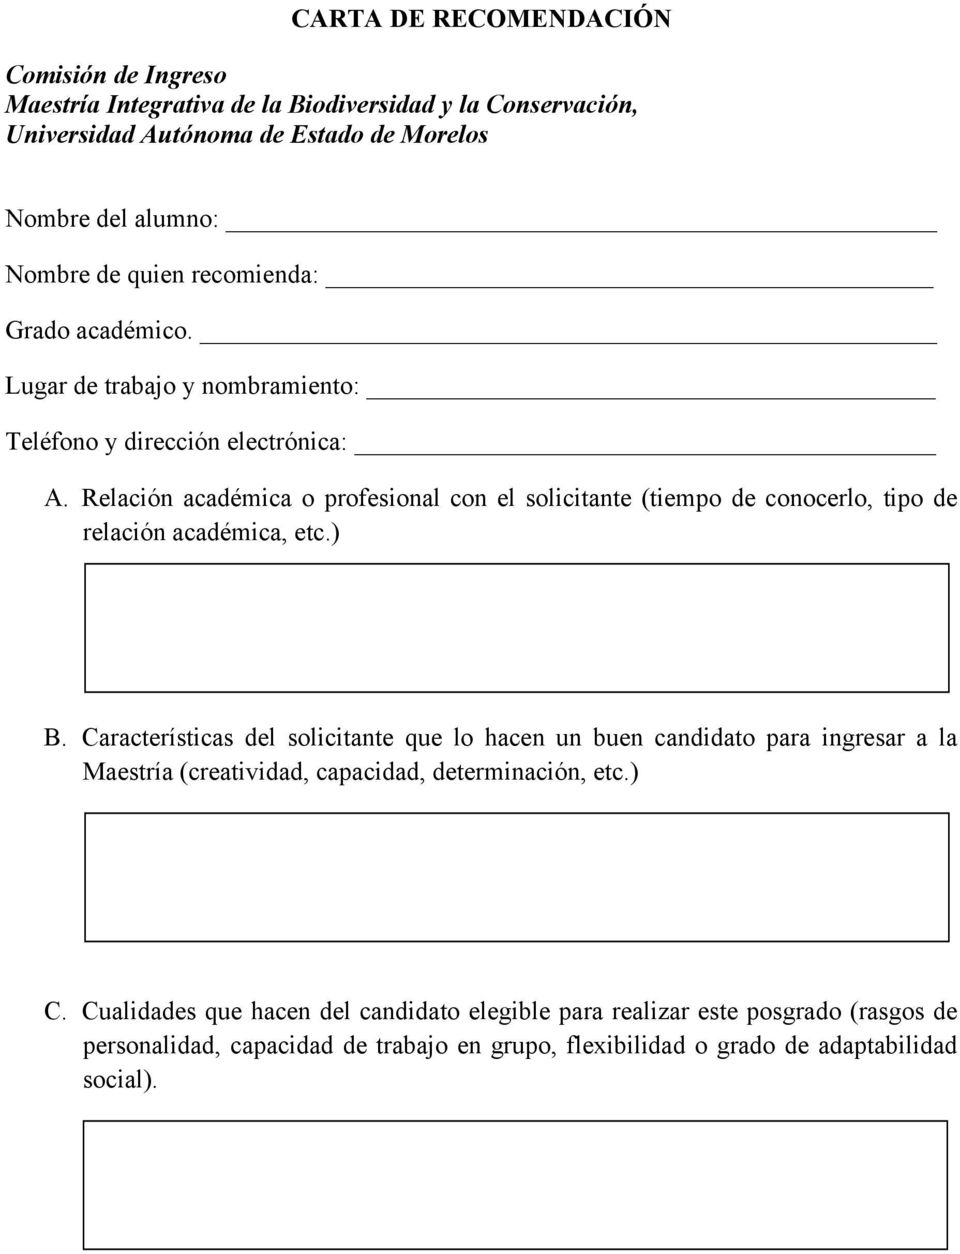 CARTA DE SOLICITUD DE INGRESO A LA MAESTRÍA INTEGRATIVA DE LA BIODIVERSIDAD  Y LA CONSERVACIÓN - PDF Descargar libre